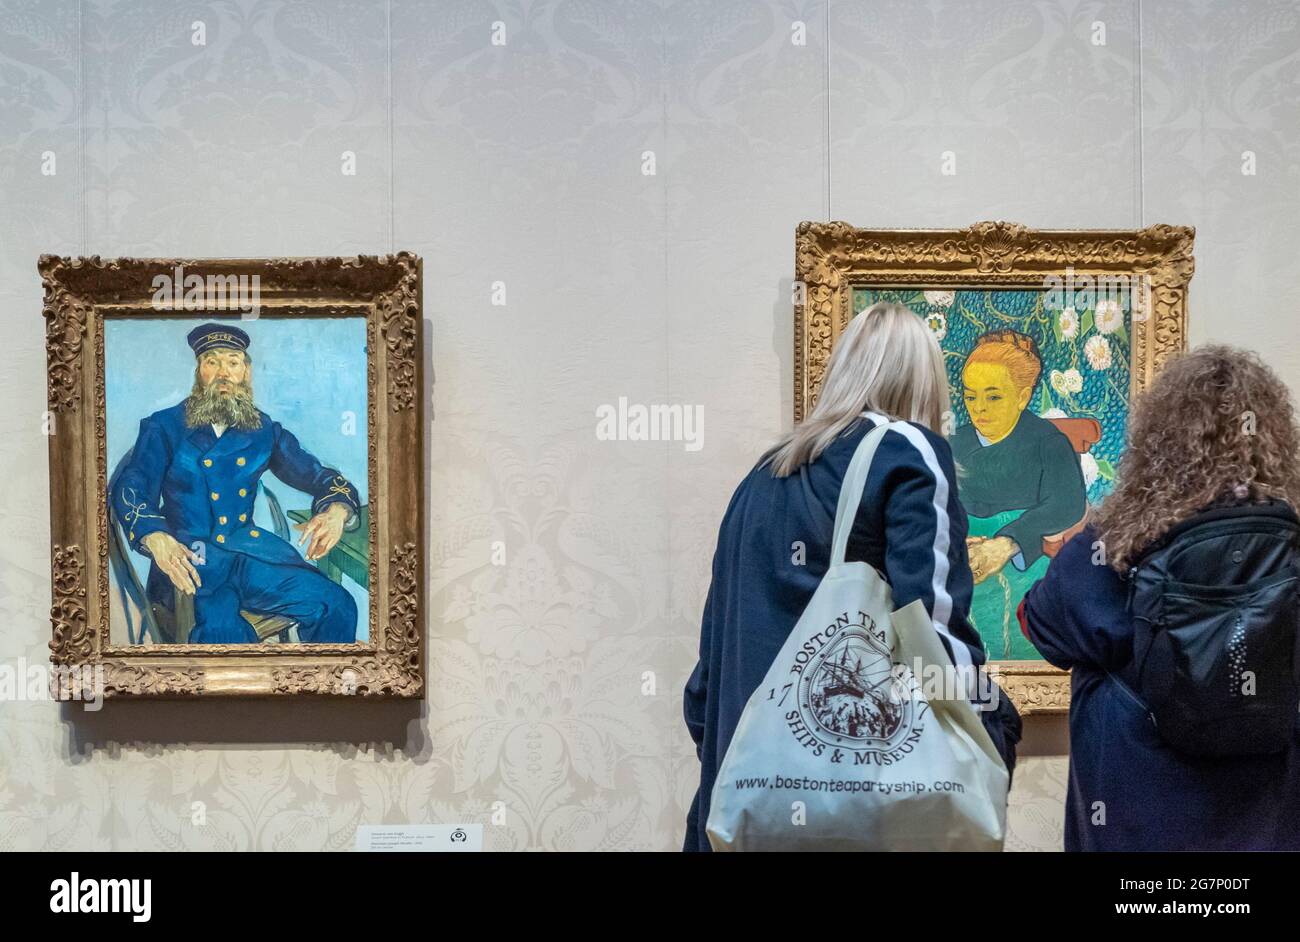 Dos mujeres estudian retratos de Van Gogh en el Museo de Bellas Artes de Boston, Massachusetts. Foto de stock